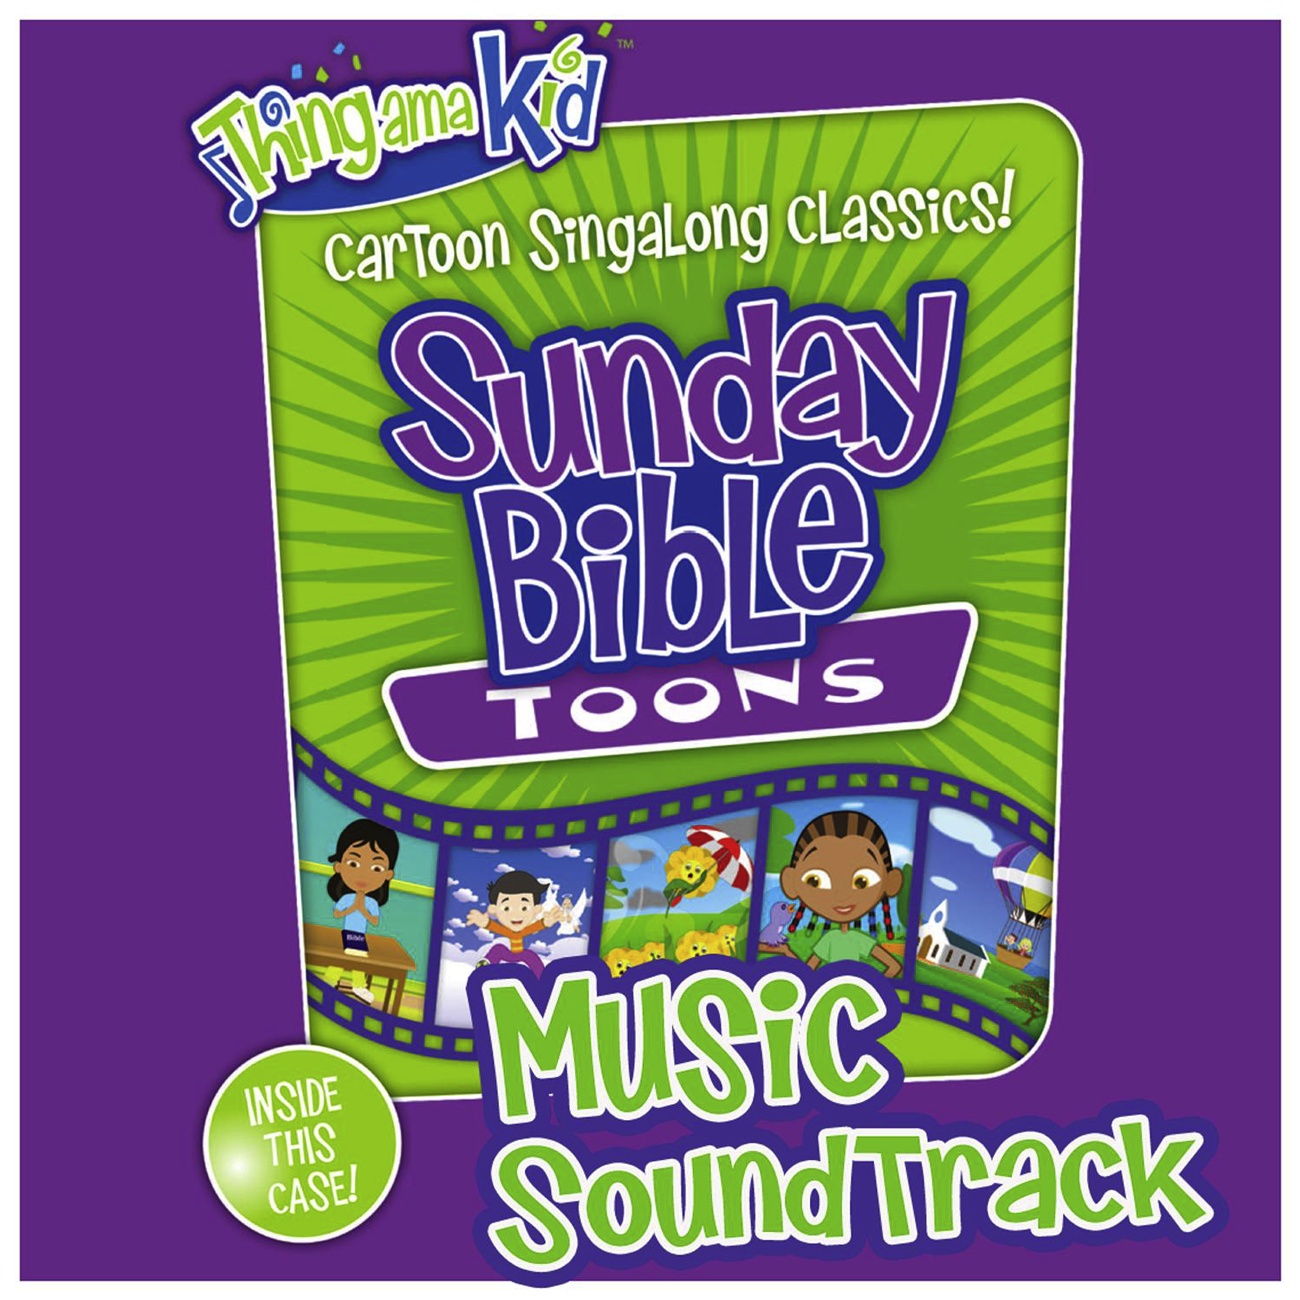 The B-i-b-l-e - Split Track (Sunday Bible Toons Music Album Version)